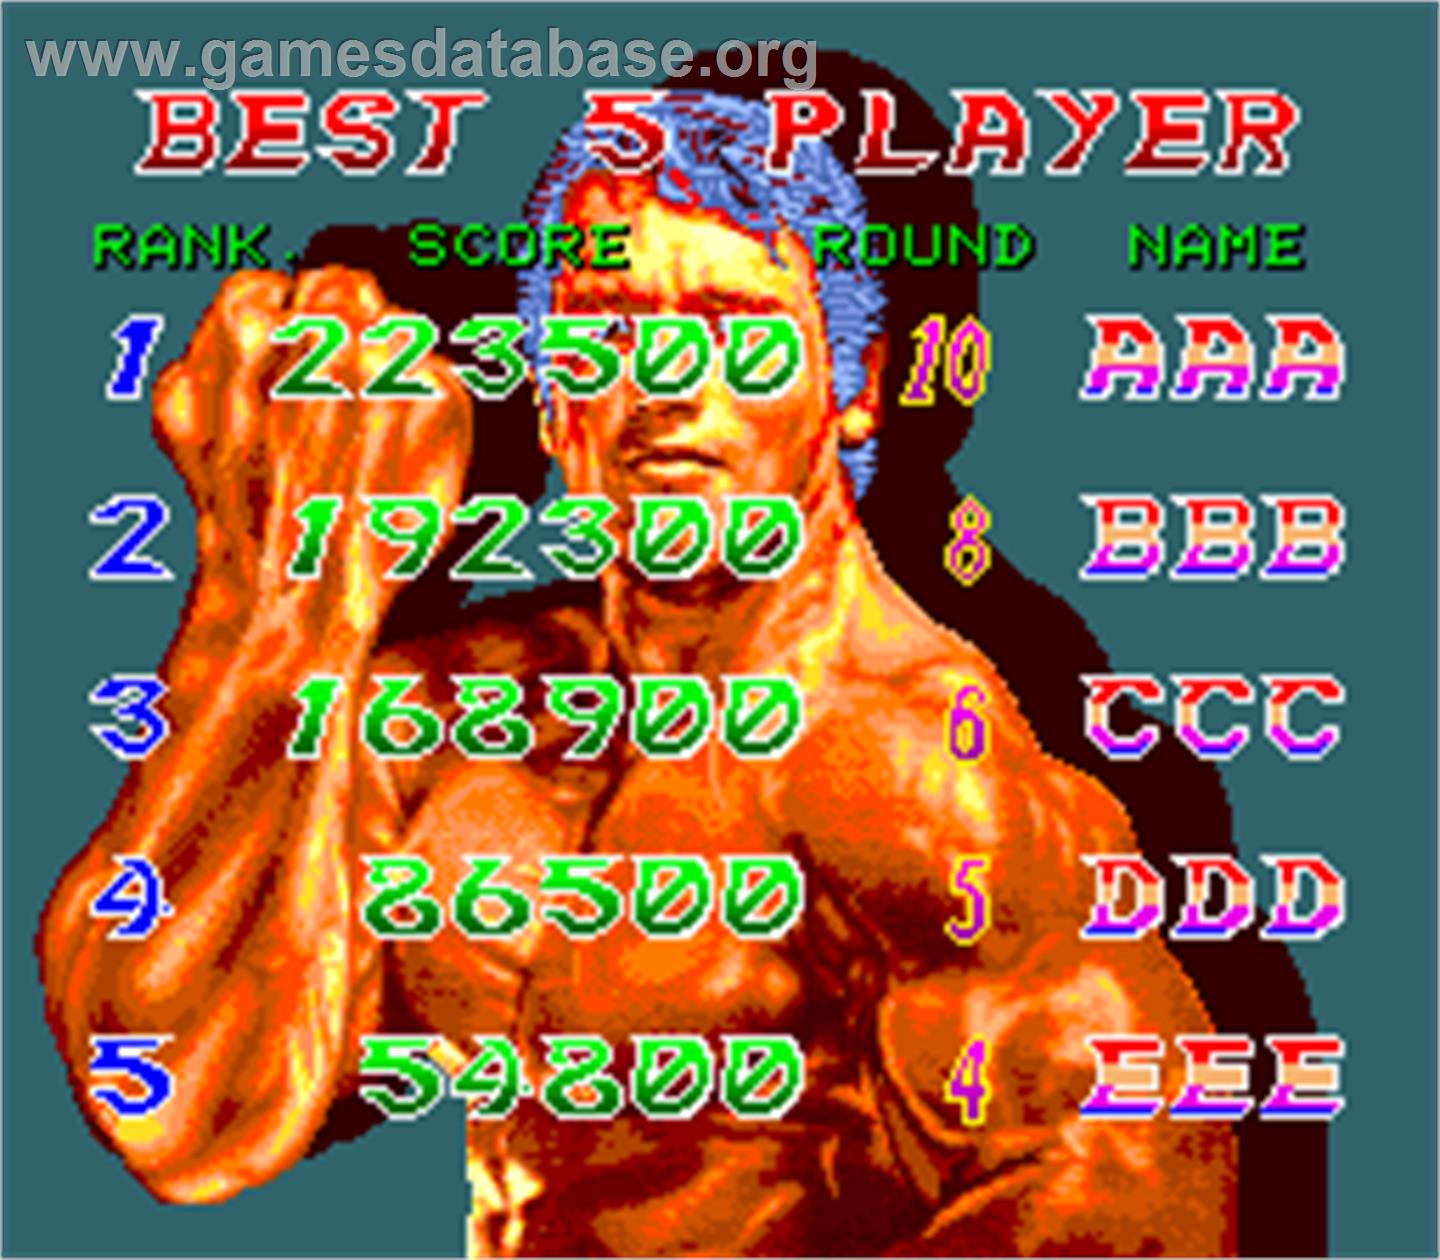 Best Of Best - Arcade - Artwork - High Score Screen